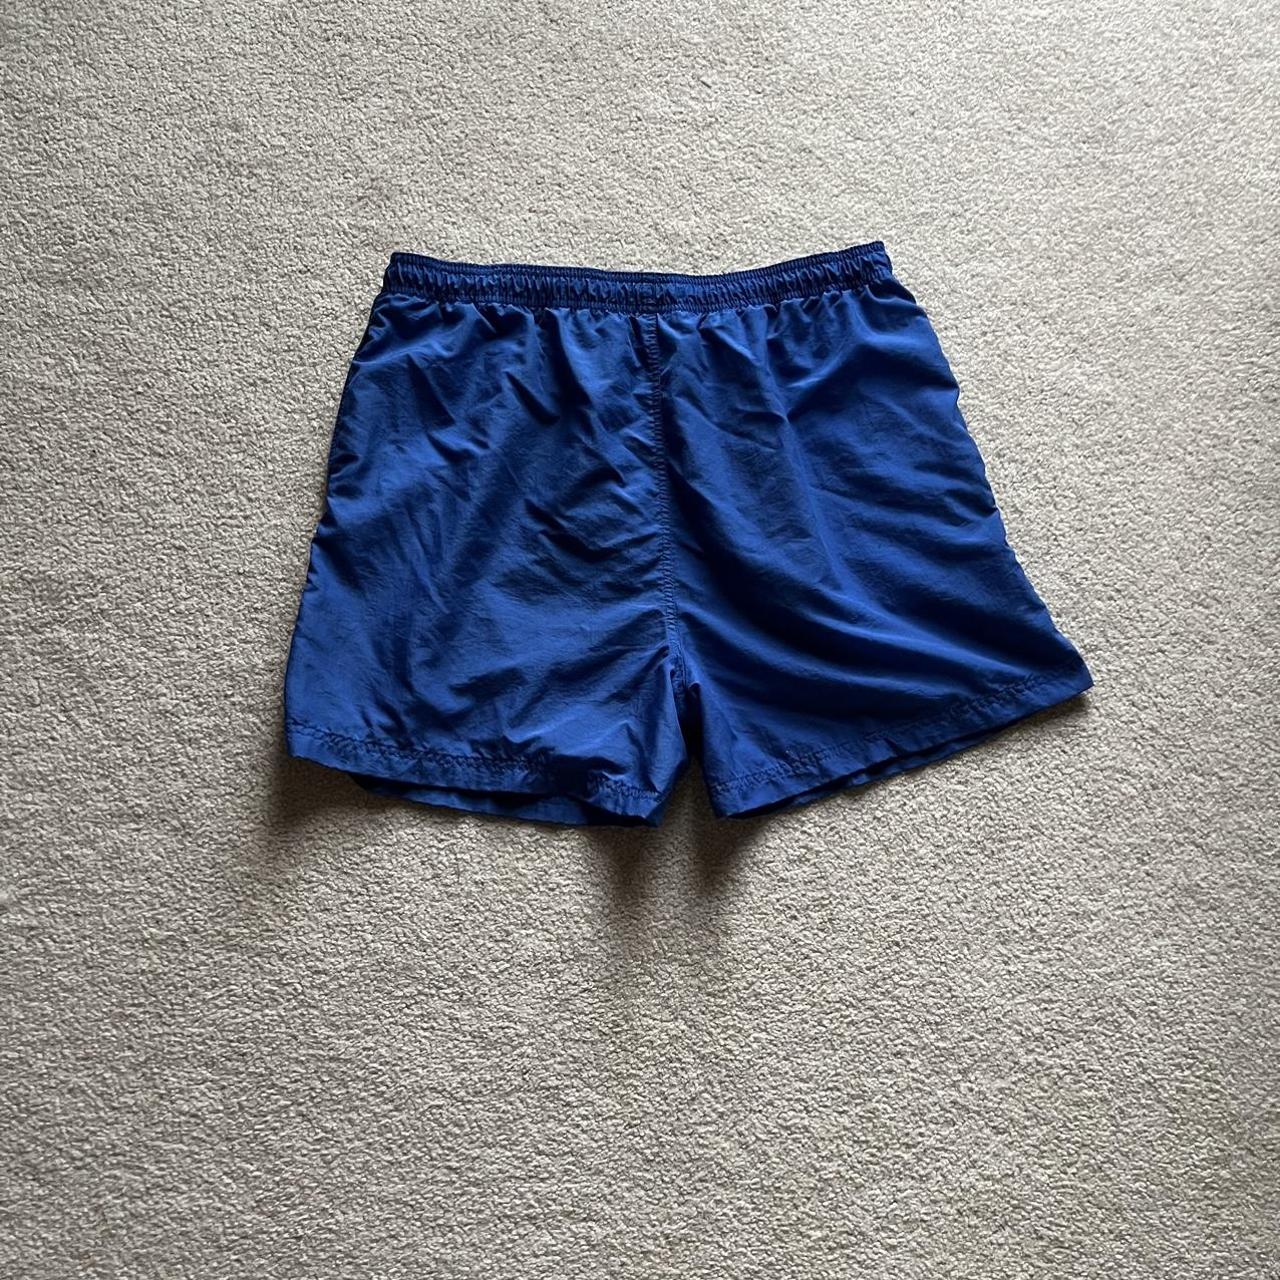 Acacia Swimwear Men's Blue and Navy Shorts (4)